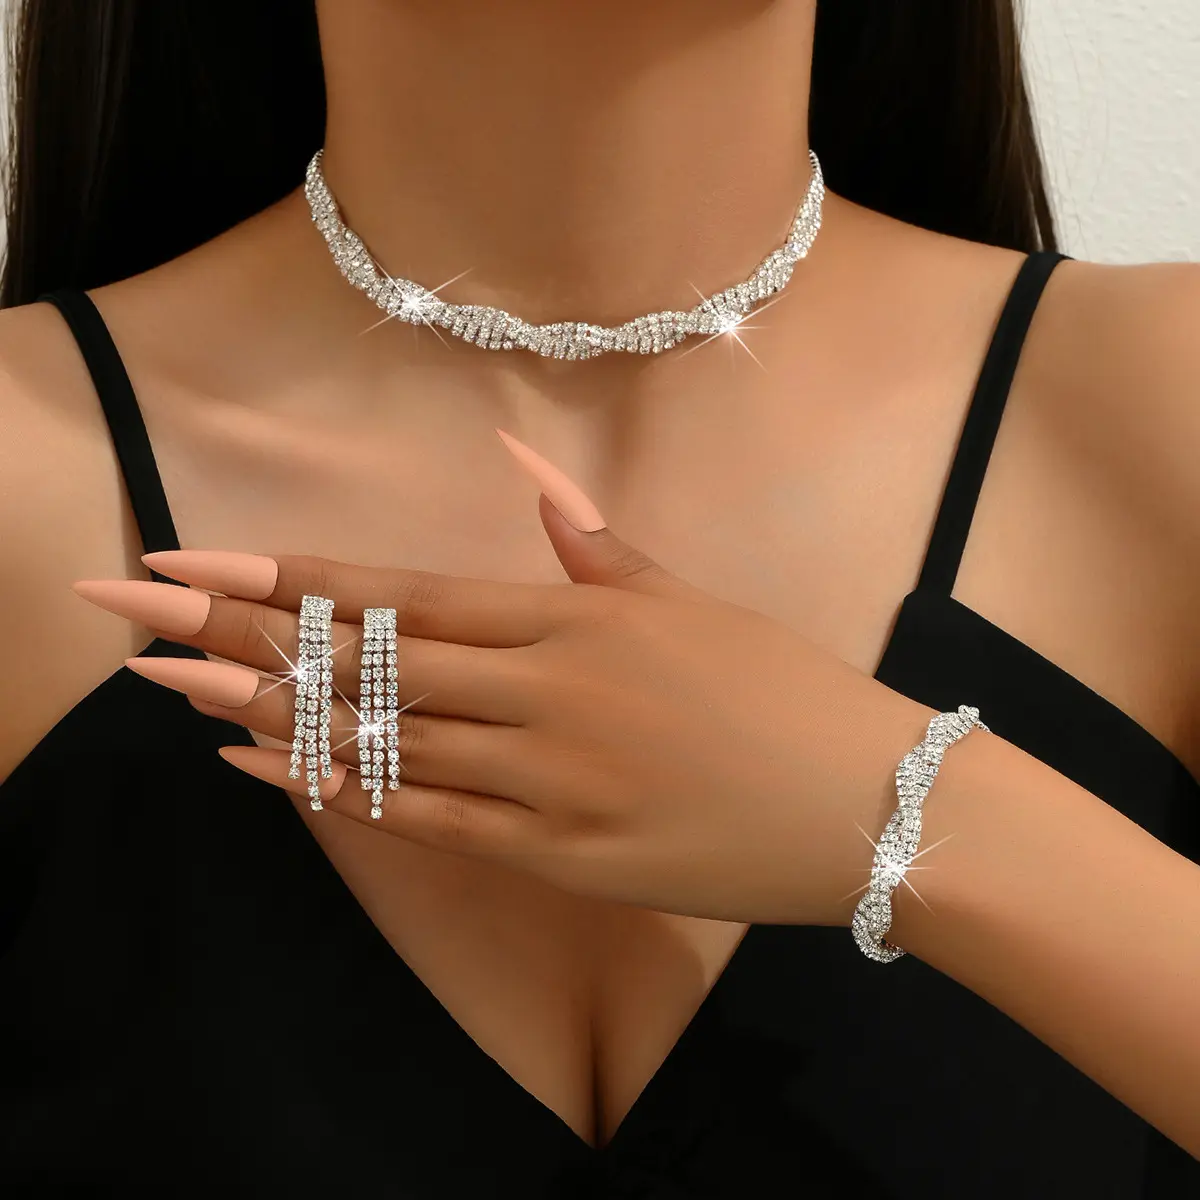 웨딩 파티 액세서리 쓰리피스 여성 패션 쥬얼리 클로 체인 다이아몬드 파티 팔찌 목걸이 귀걸이의 밝은 전체